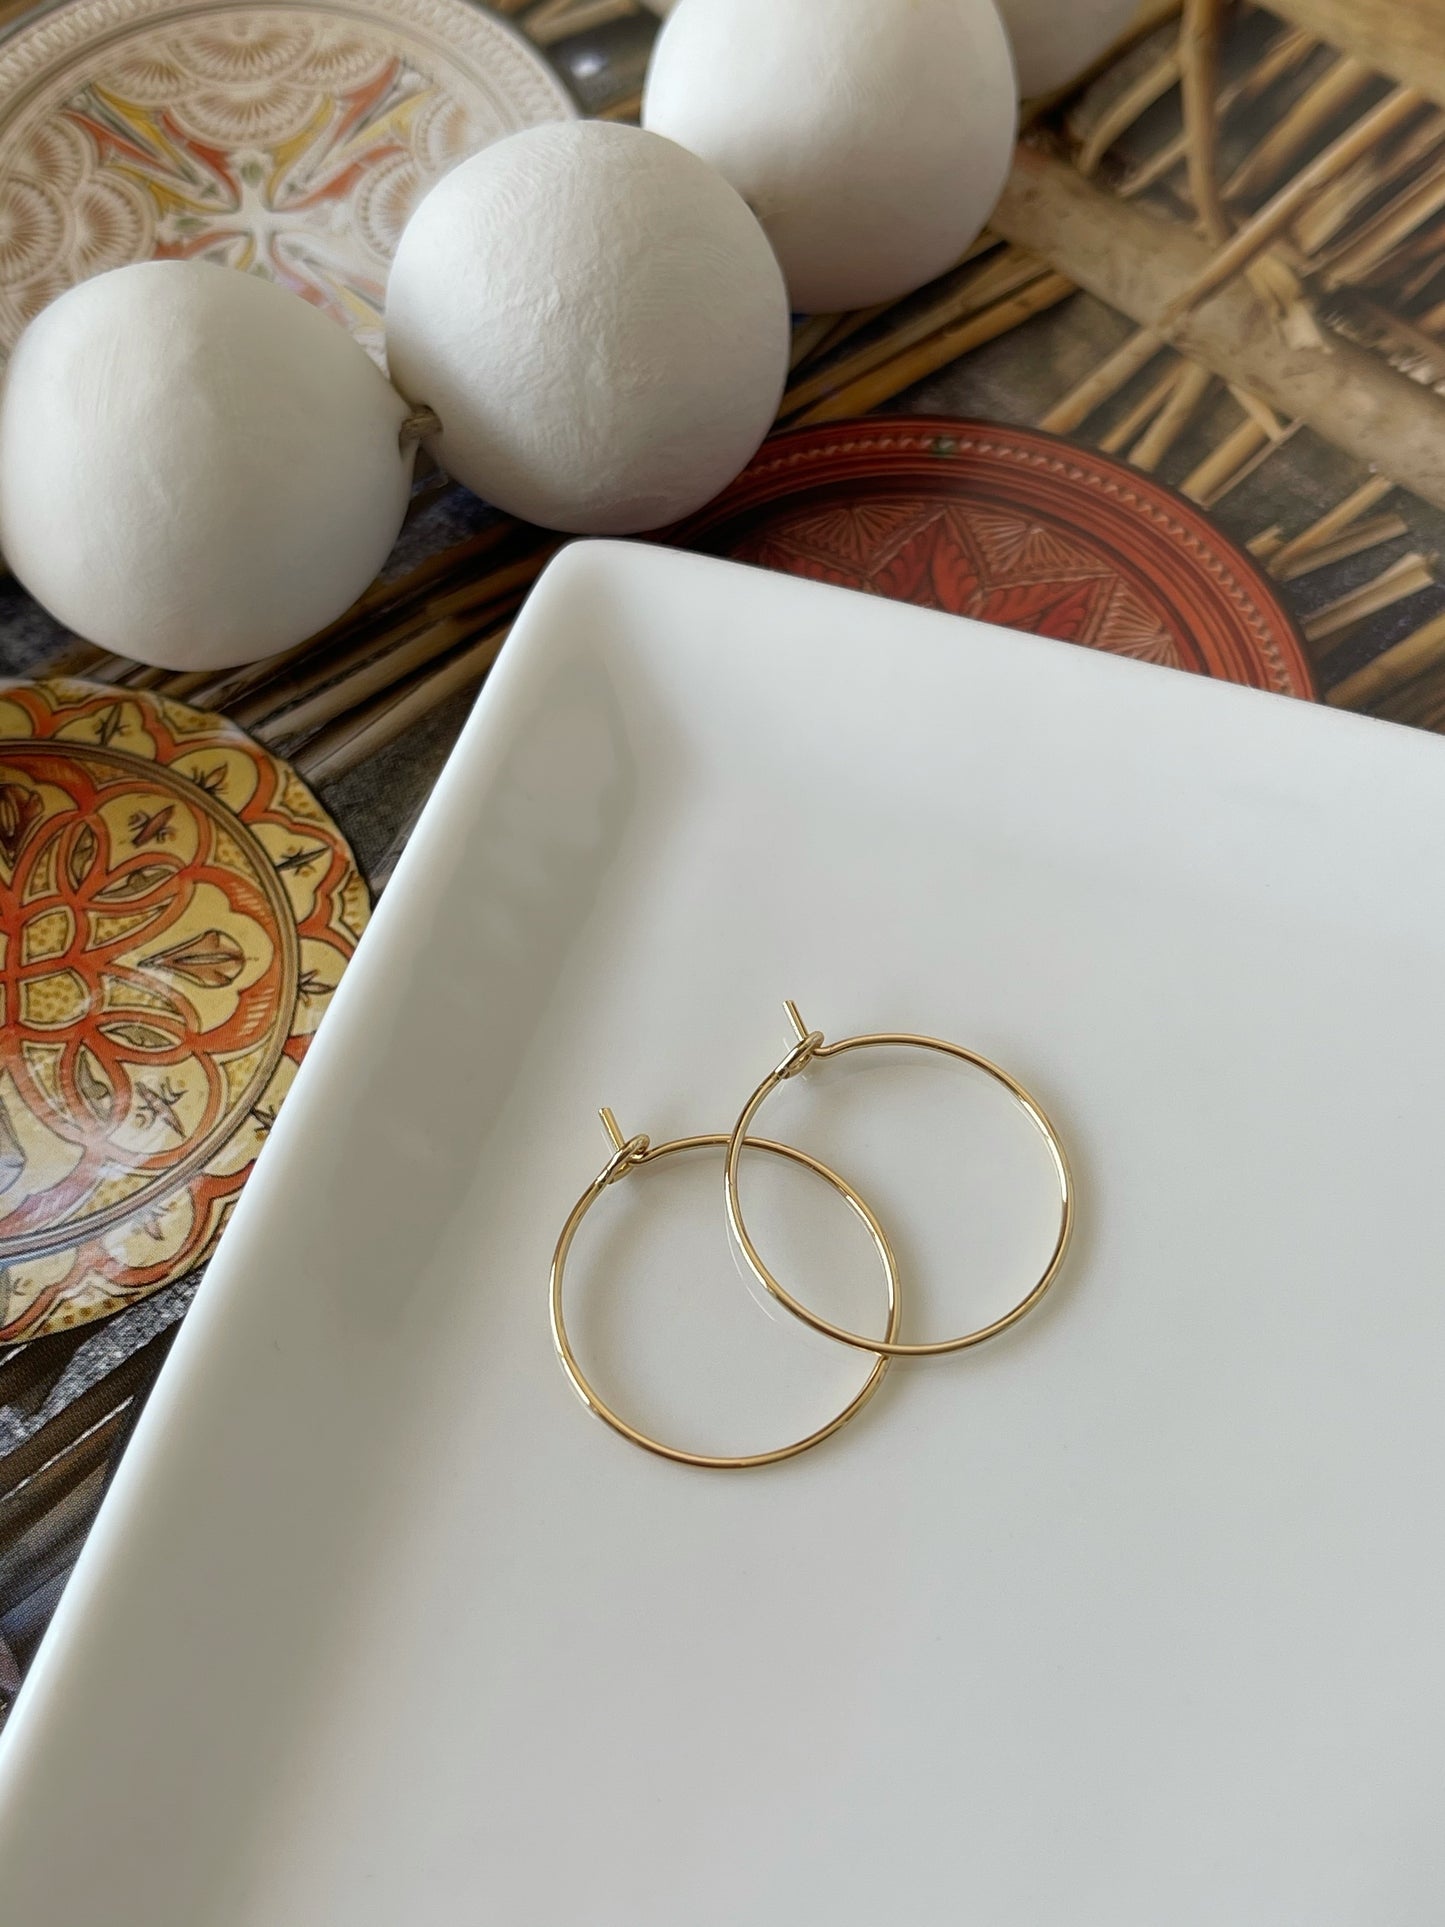 Simple gold hoop earrings